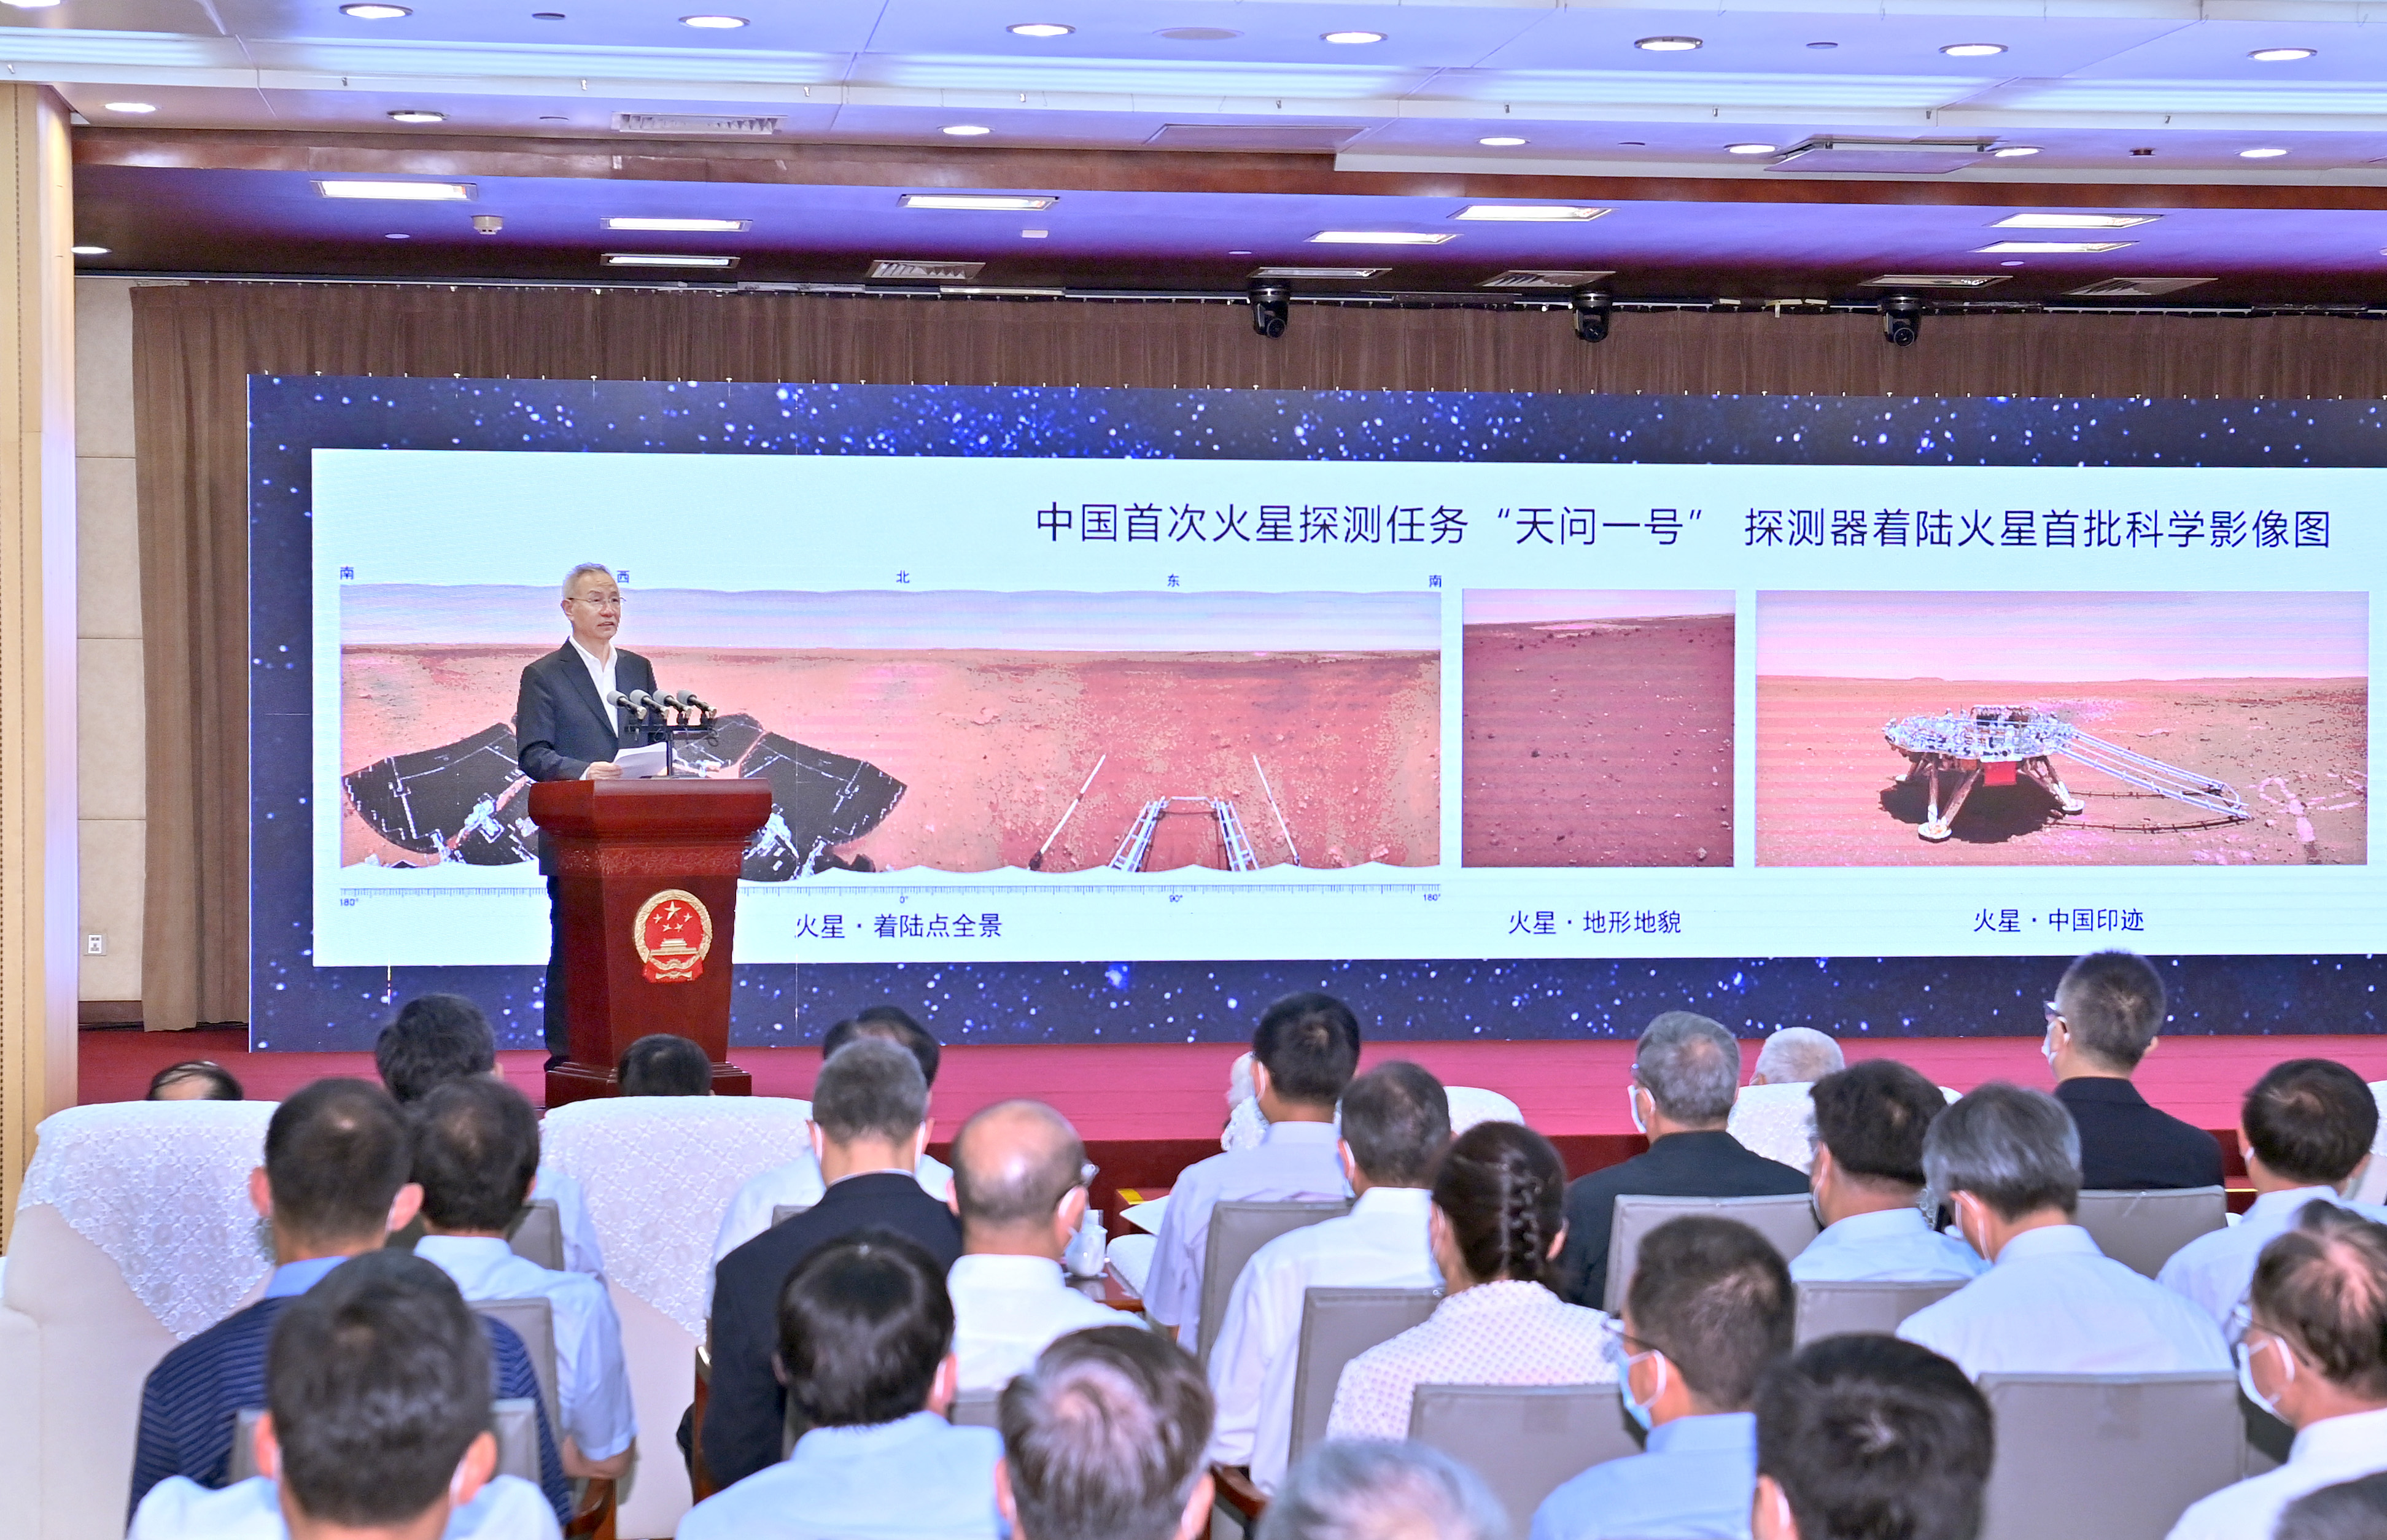 Liu Ho kínai miniszterelnök-helyettes a kínai marsjáró által küldött képeket mutatja be ünnepélyesen Pekingben, 2021. június 11-én